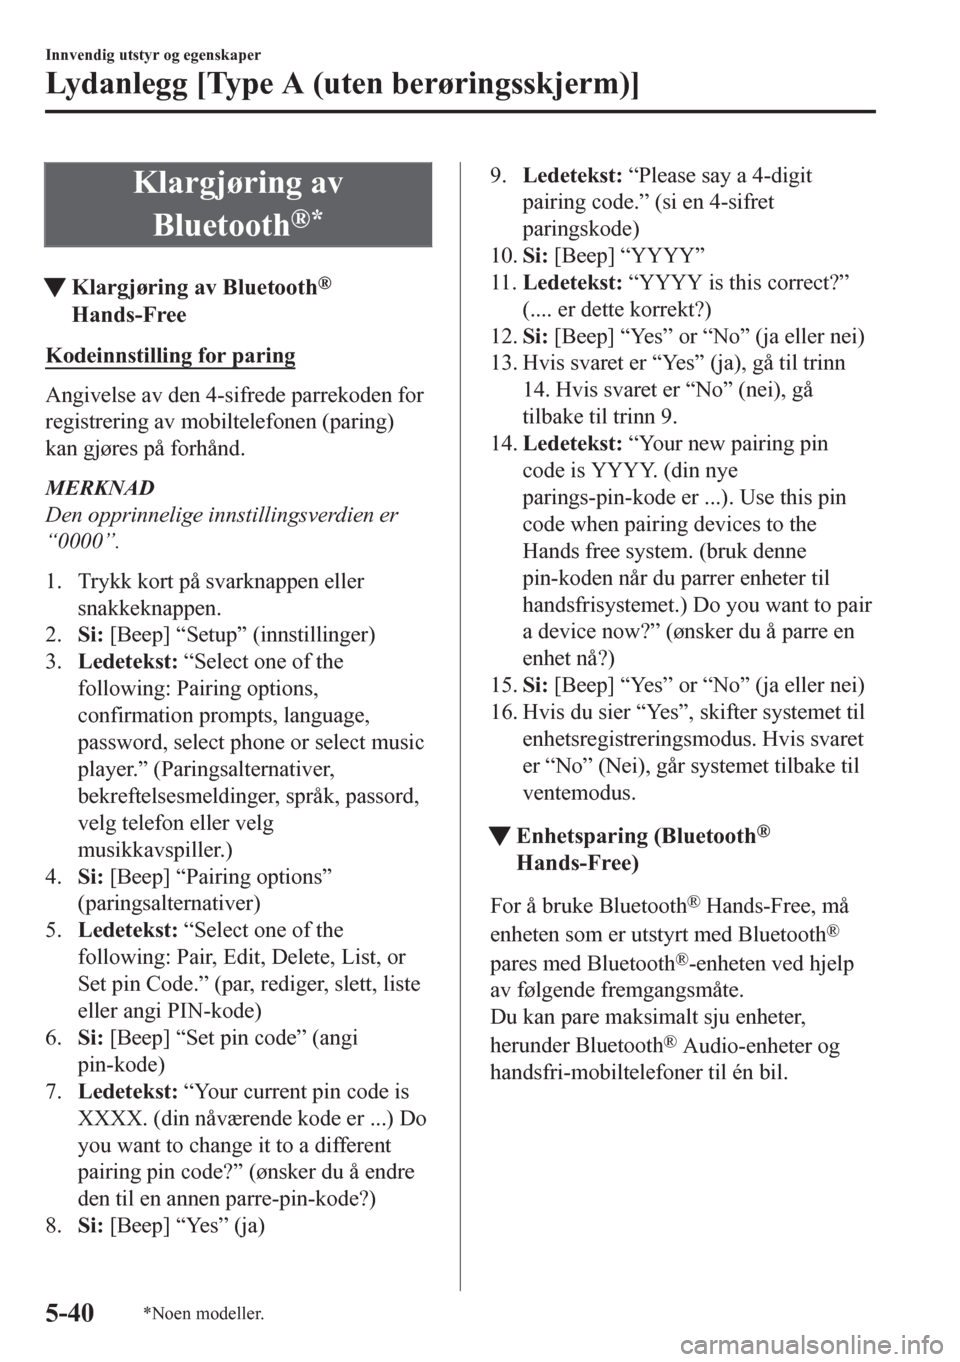 MAZDA MODEL CX-5 2018  Brukerhåndbok (in Norwegian) Klargjøring av
Bluetooth
®*
tKlargjøring av Bluetooth®
Hands-Free
Kodeinnstilling for paring
Angivelse av den 4-sifrede parrekoden for
registrering av mobiltelefonen (paring)
kan gjøres på forh�